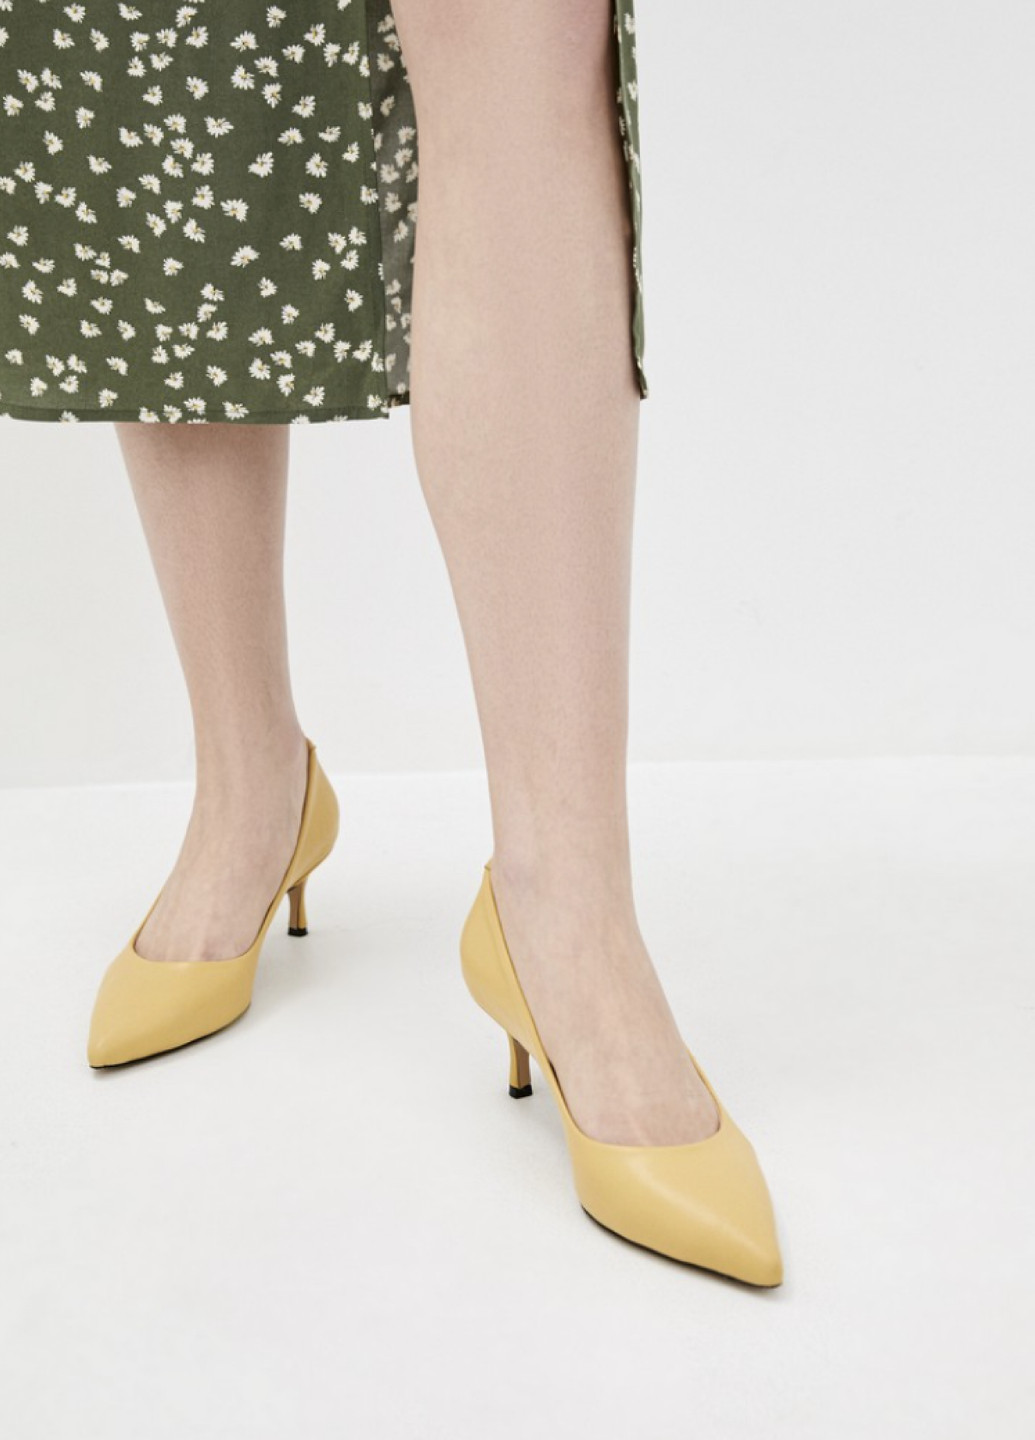 Женские кожаные туфли-лодочки на каблуке лимонные Pera Donna на среднем каблуке